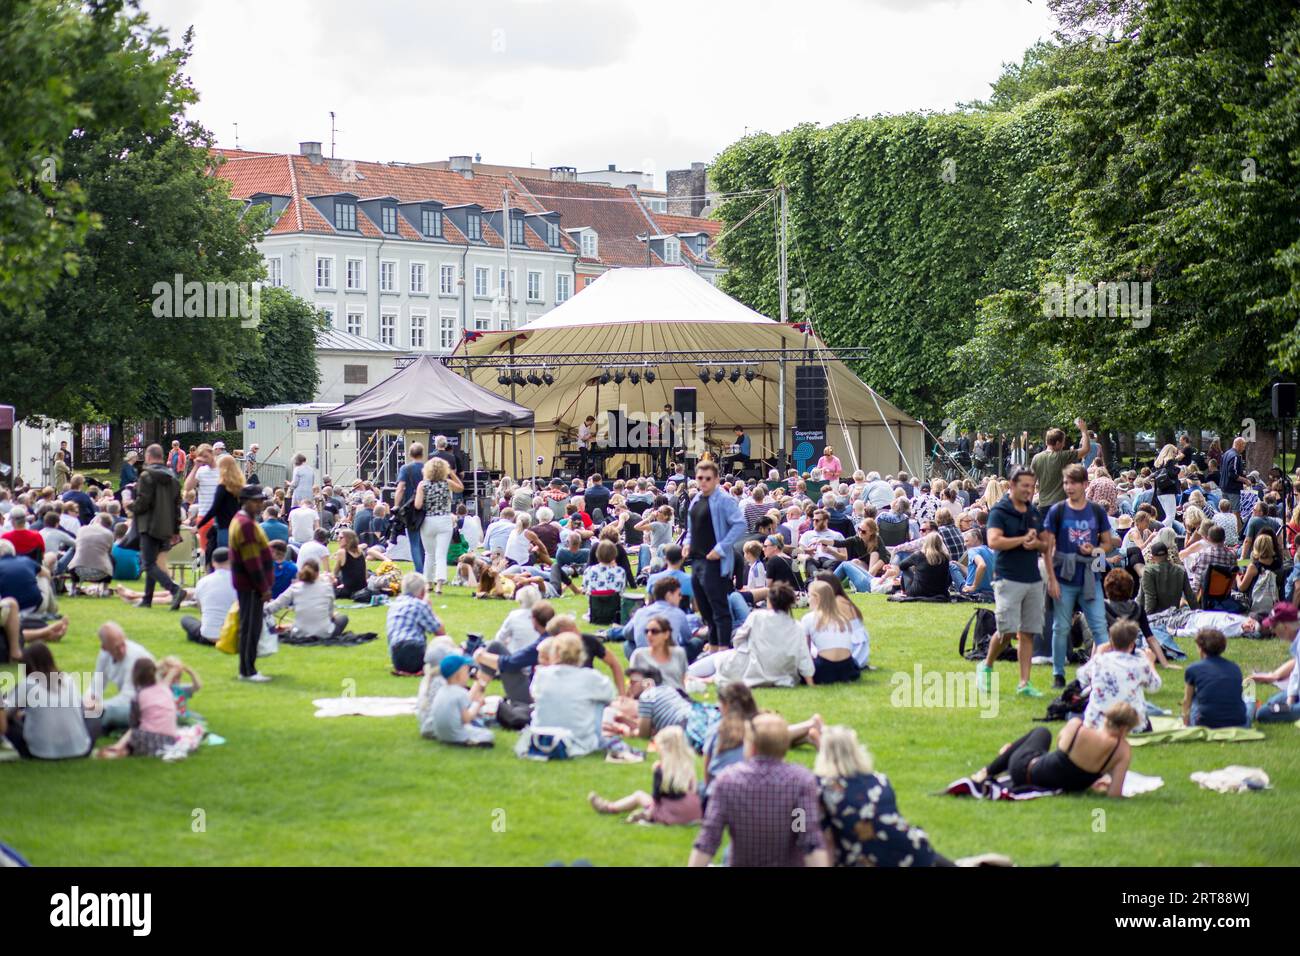 Copenhague, Danemark, 08 juillet 2017 : un groupe se produisant sur une scène devant une foule pour le Festival de Jazz à King's Garden Banque D'Images